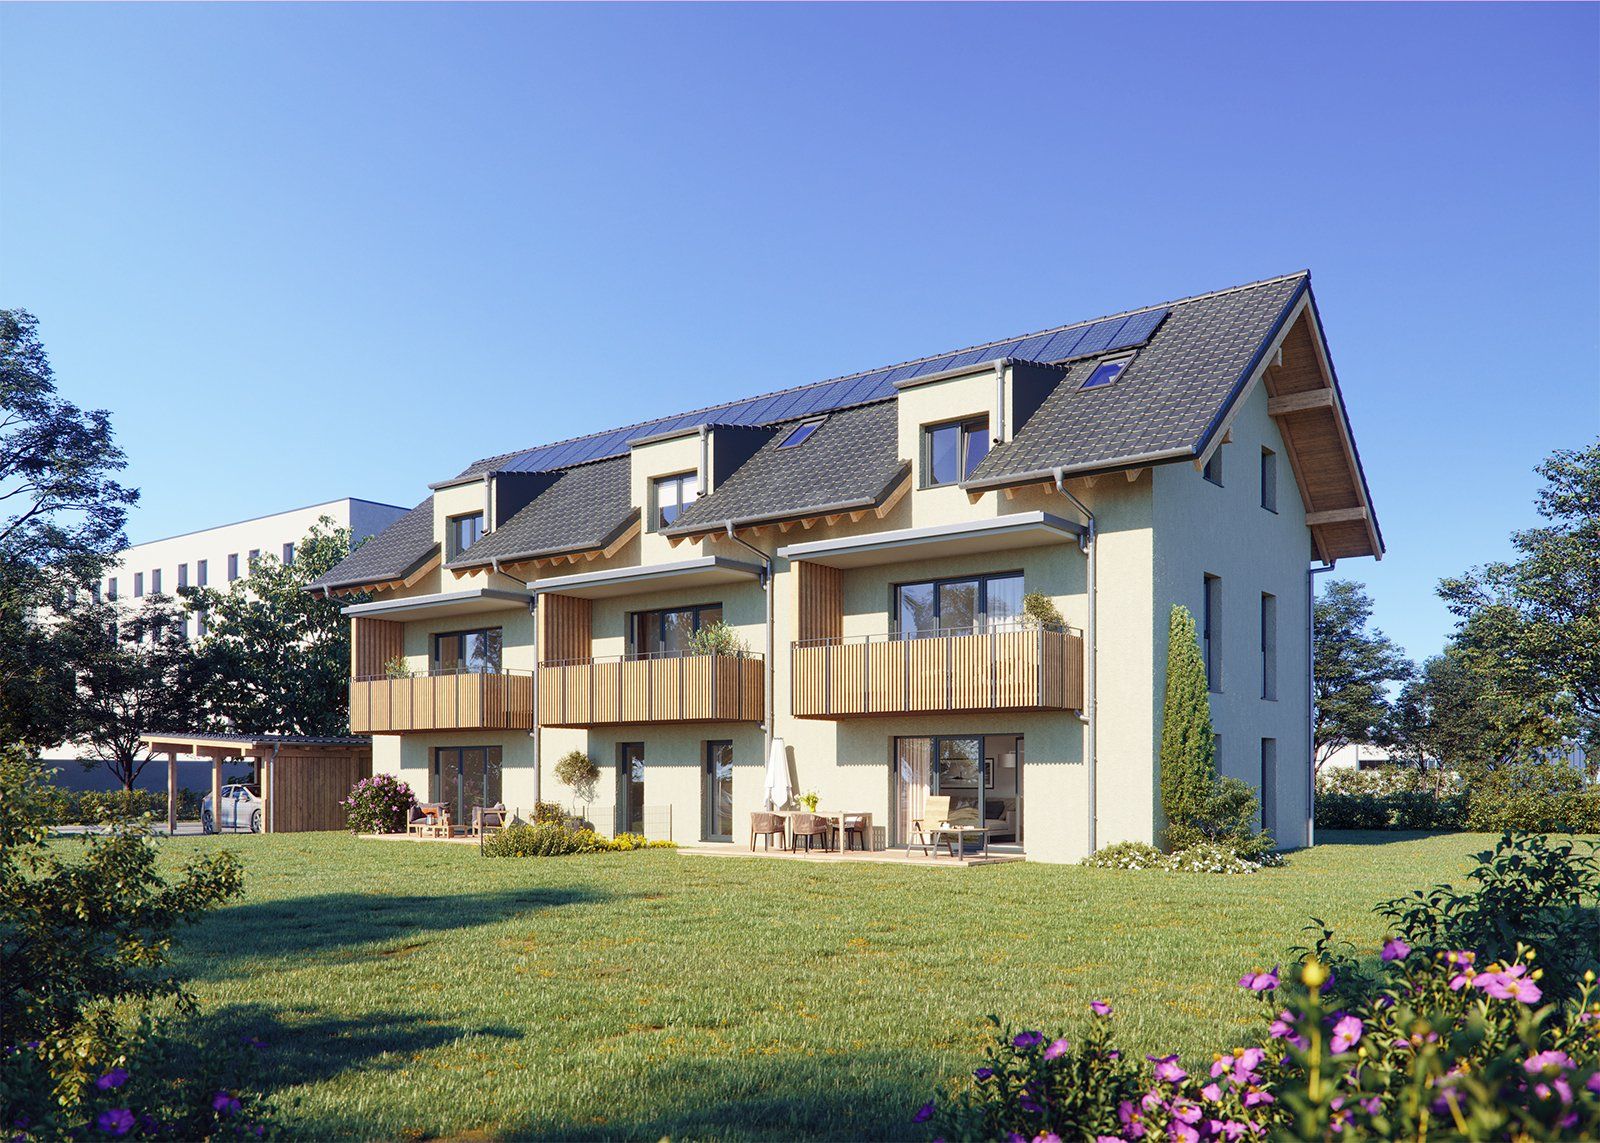 3D Architekturvisualisierung: Mehrfamilienhauses mit Solarpanel, umgeben von Rasen.